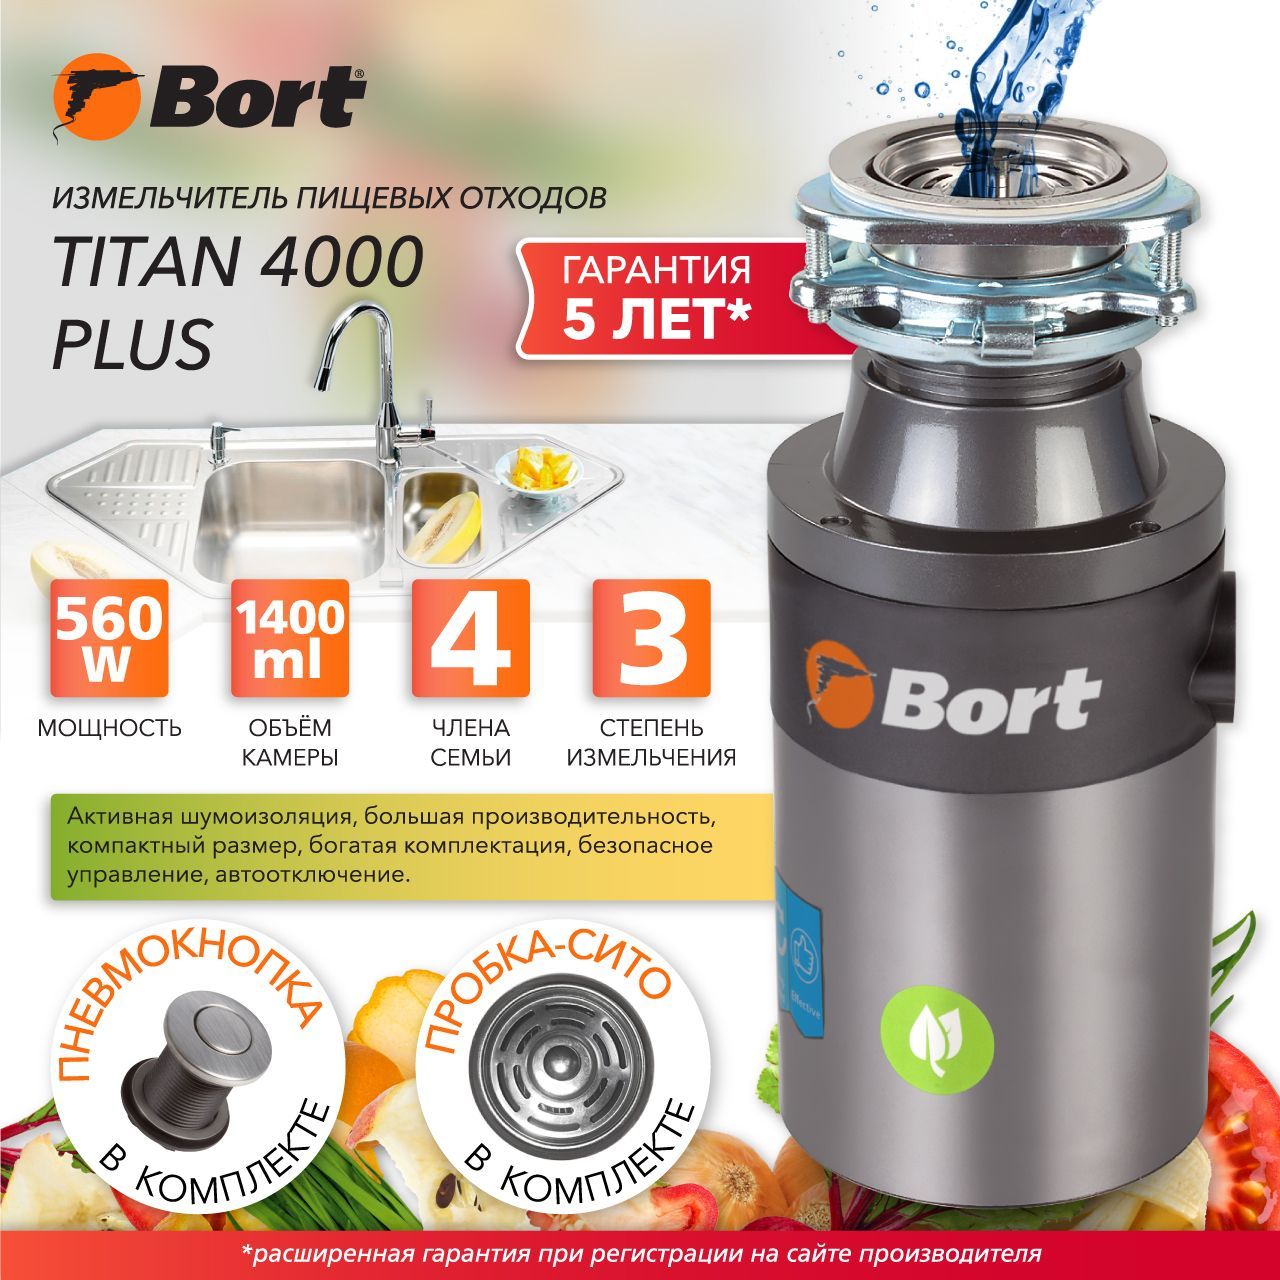 Bort Titan 4000 Plus